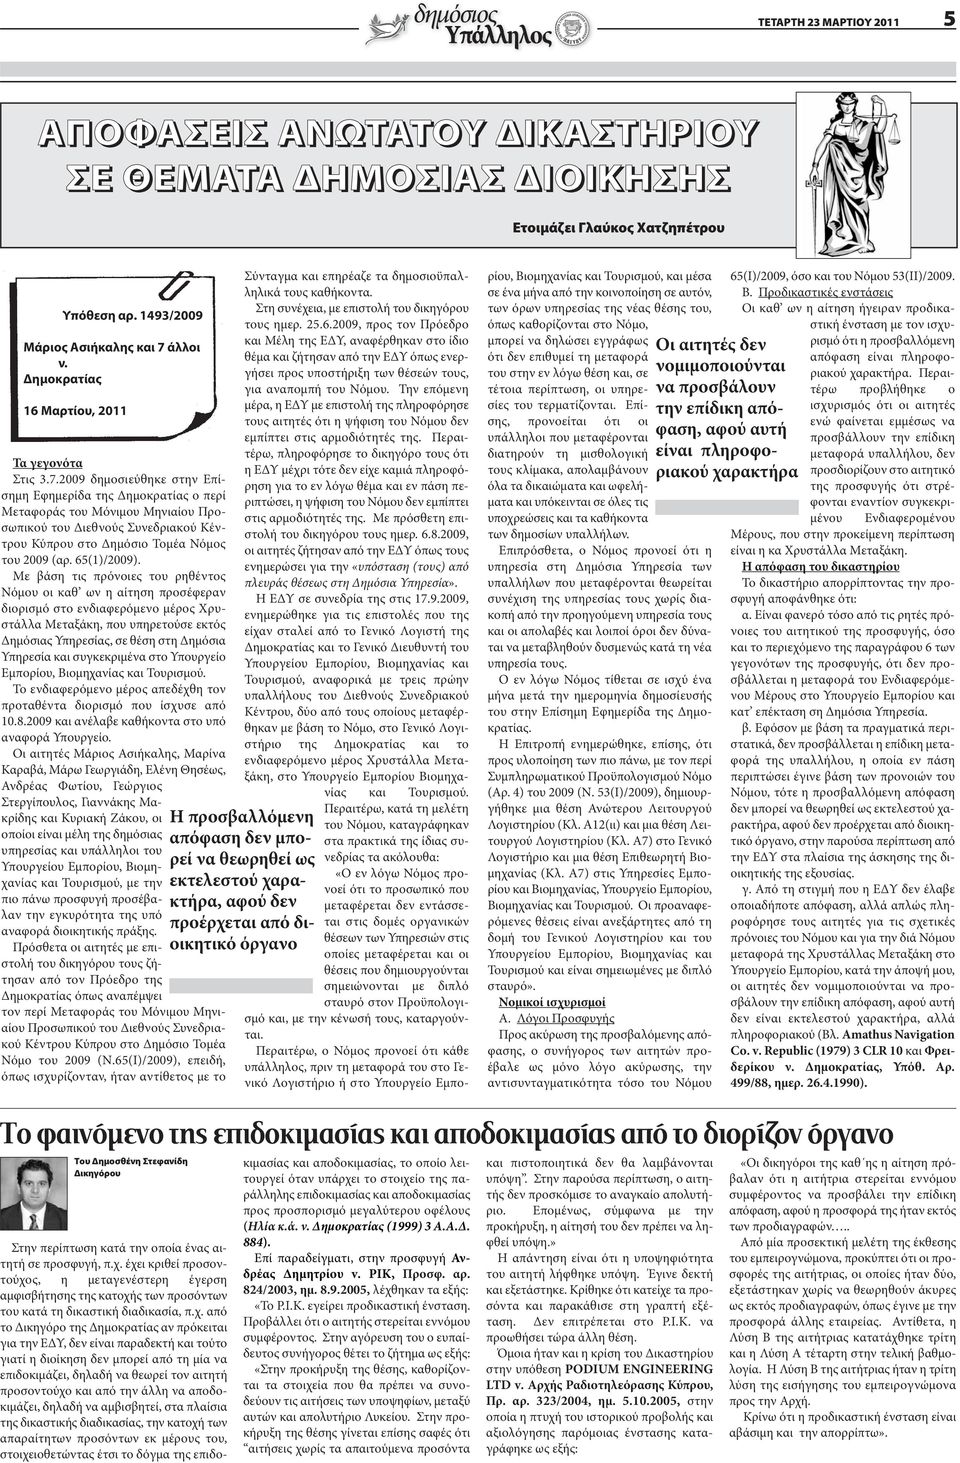 2009 δημοσιεύθηκε στην Επίσημη Εφημερίδα της Δημοκρατίας ο περί Μεταφοράς του Μόνιμου Μηνιαίου Προσωπικού του Διεθνούς Συνεδριακού Κέντρου Κύπρου στο Δημόσιο Τομέα Νόμος του 2009 (αρ. 65(1)/2009).